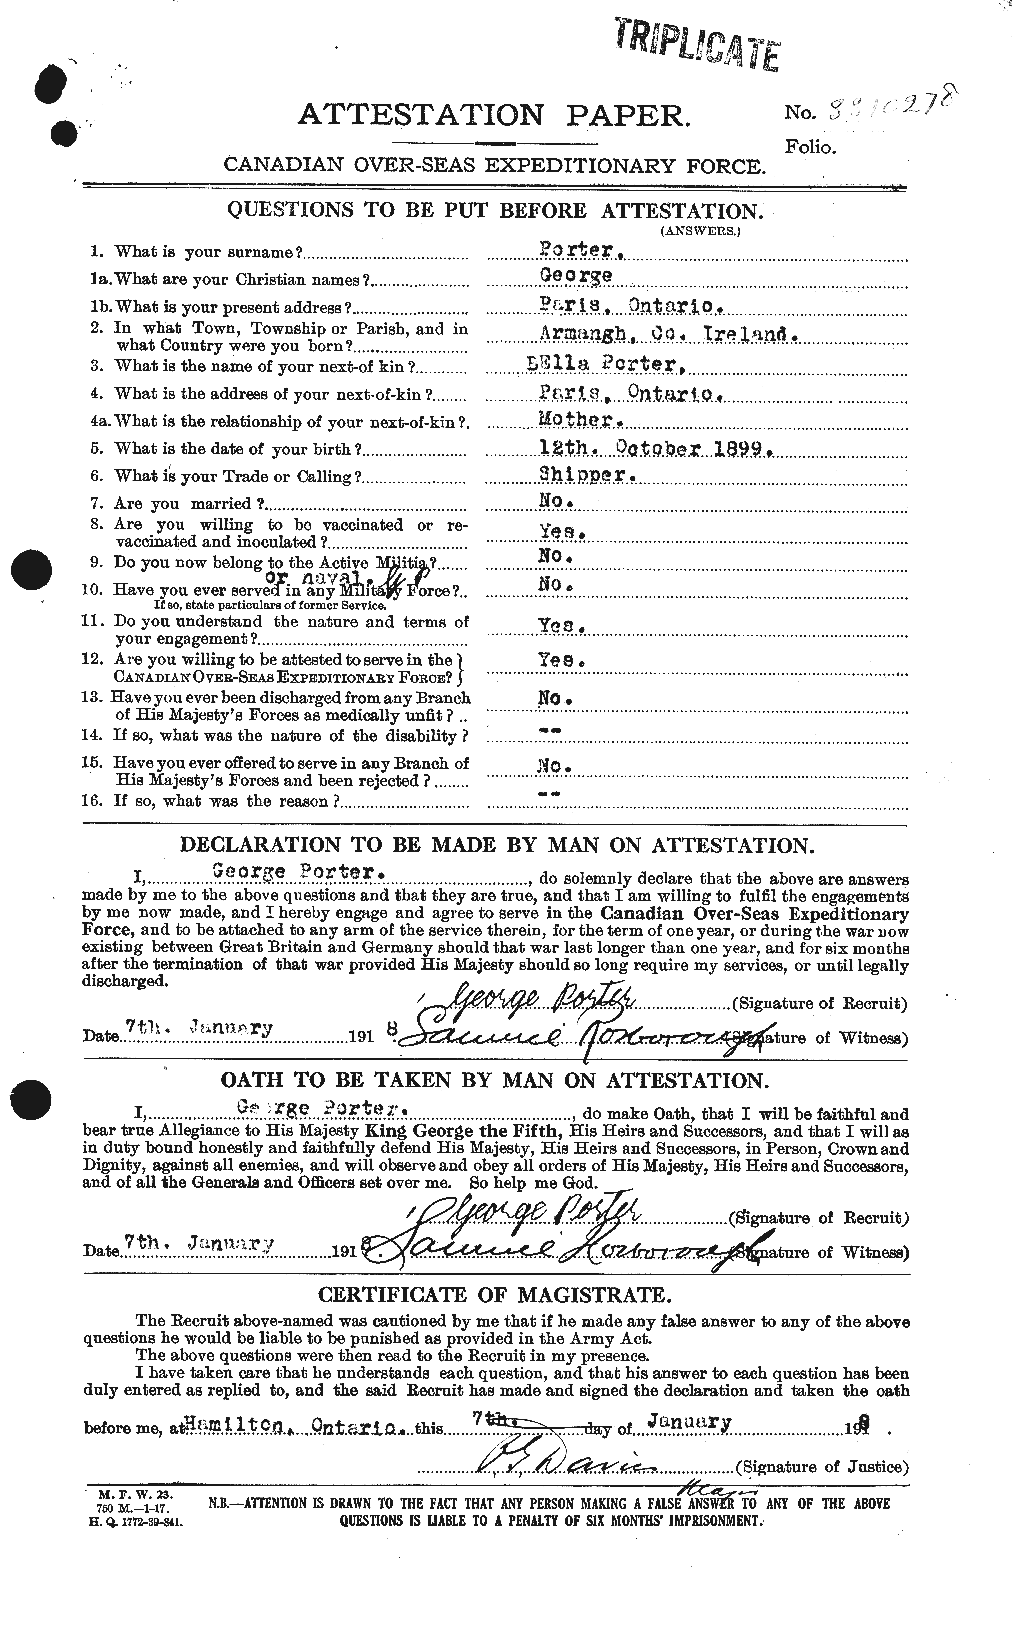 Dossiers du Personnel de la Première Guerre mondiale - CEC 583122a